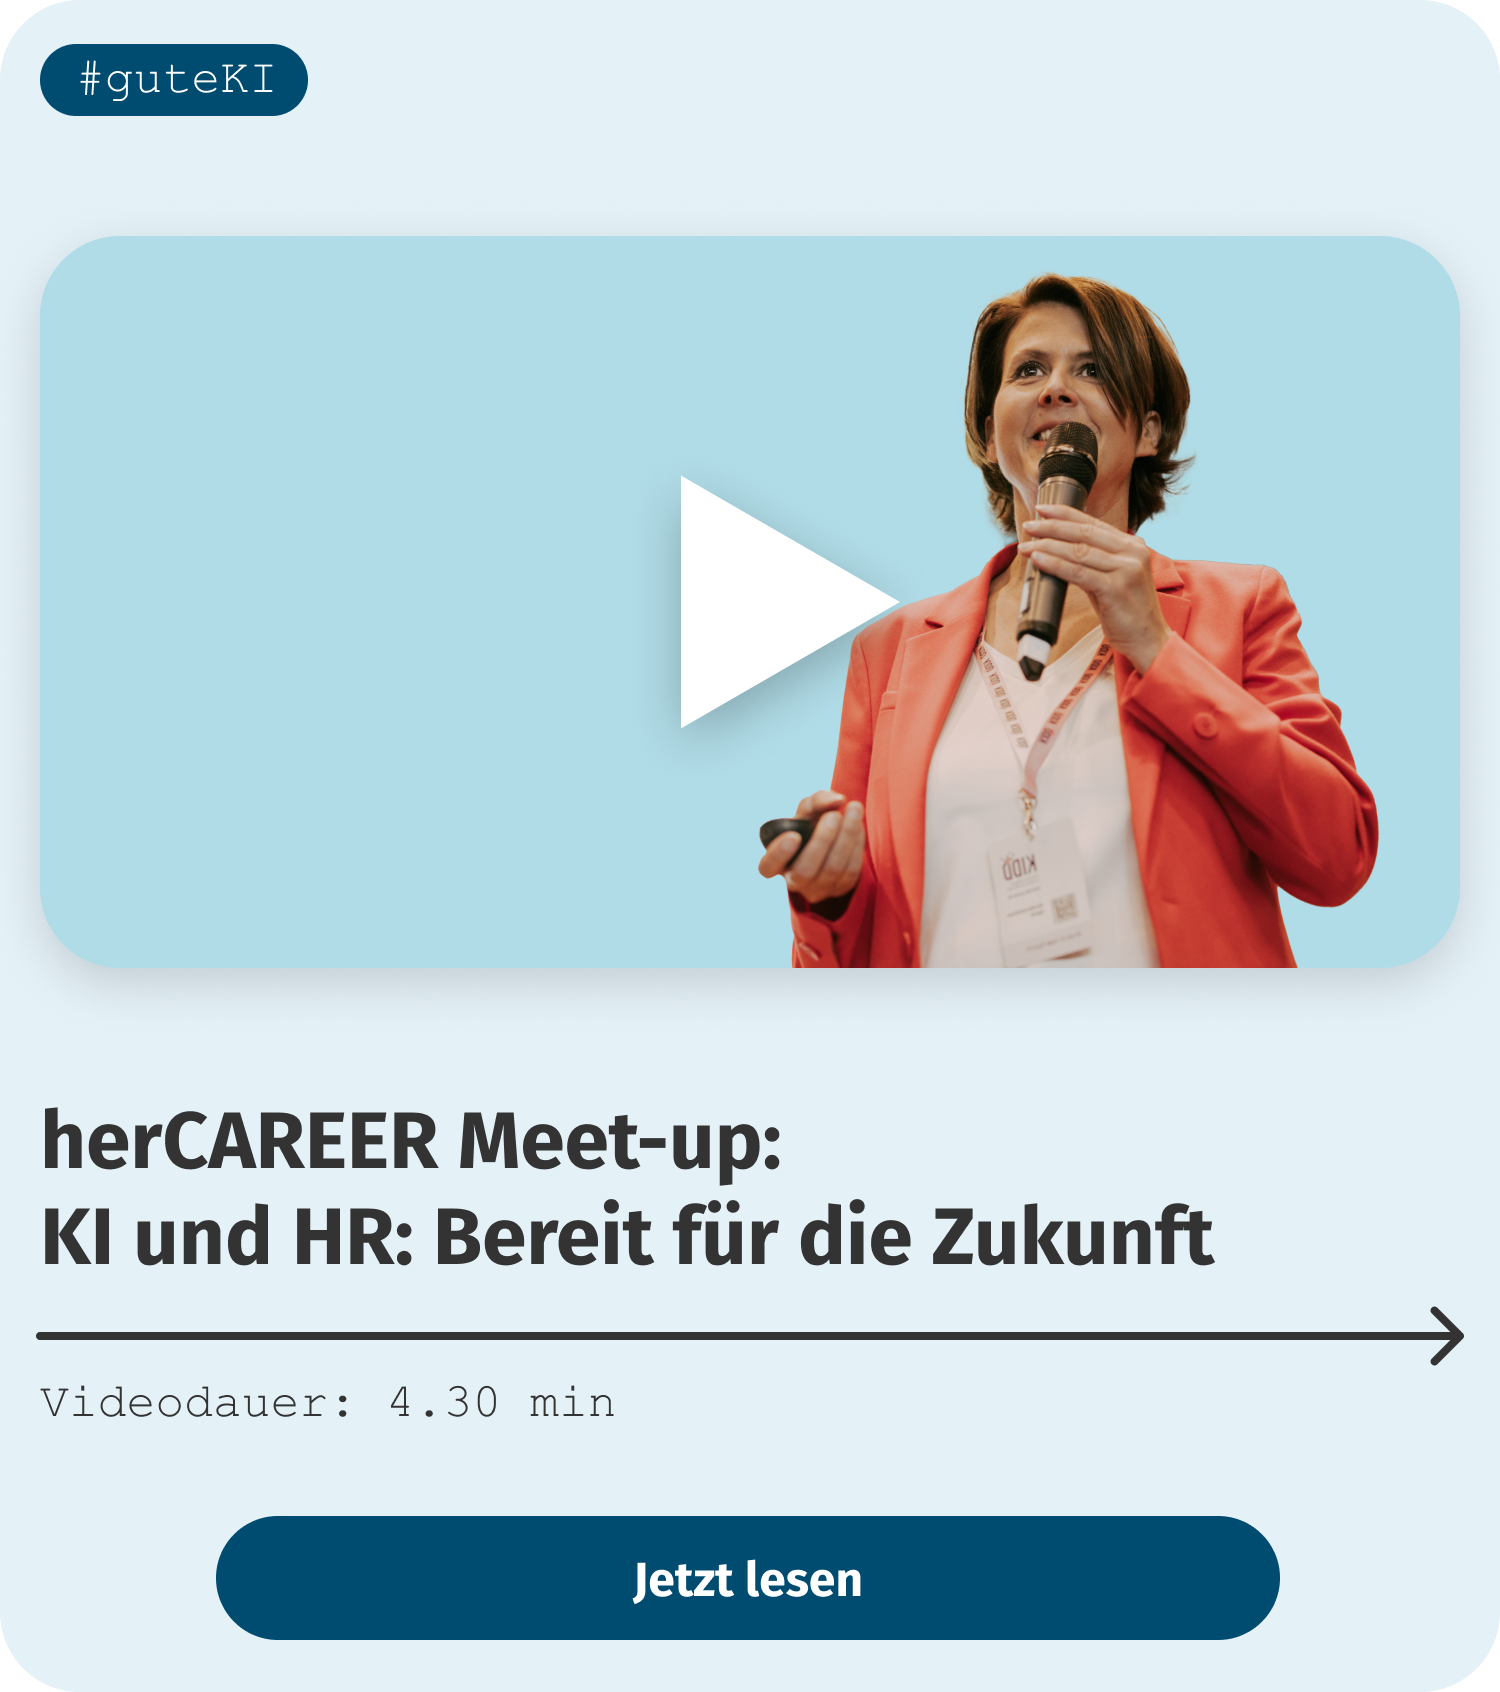 herCAREER Meet-up: KI und HR: Bereit für die Zukunft